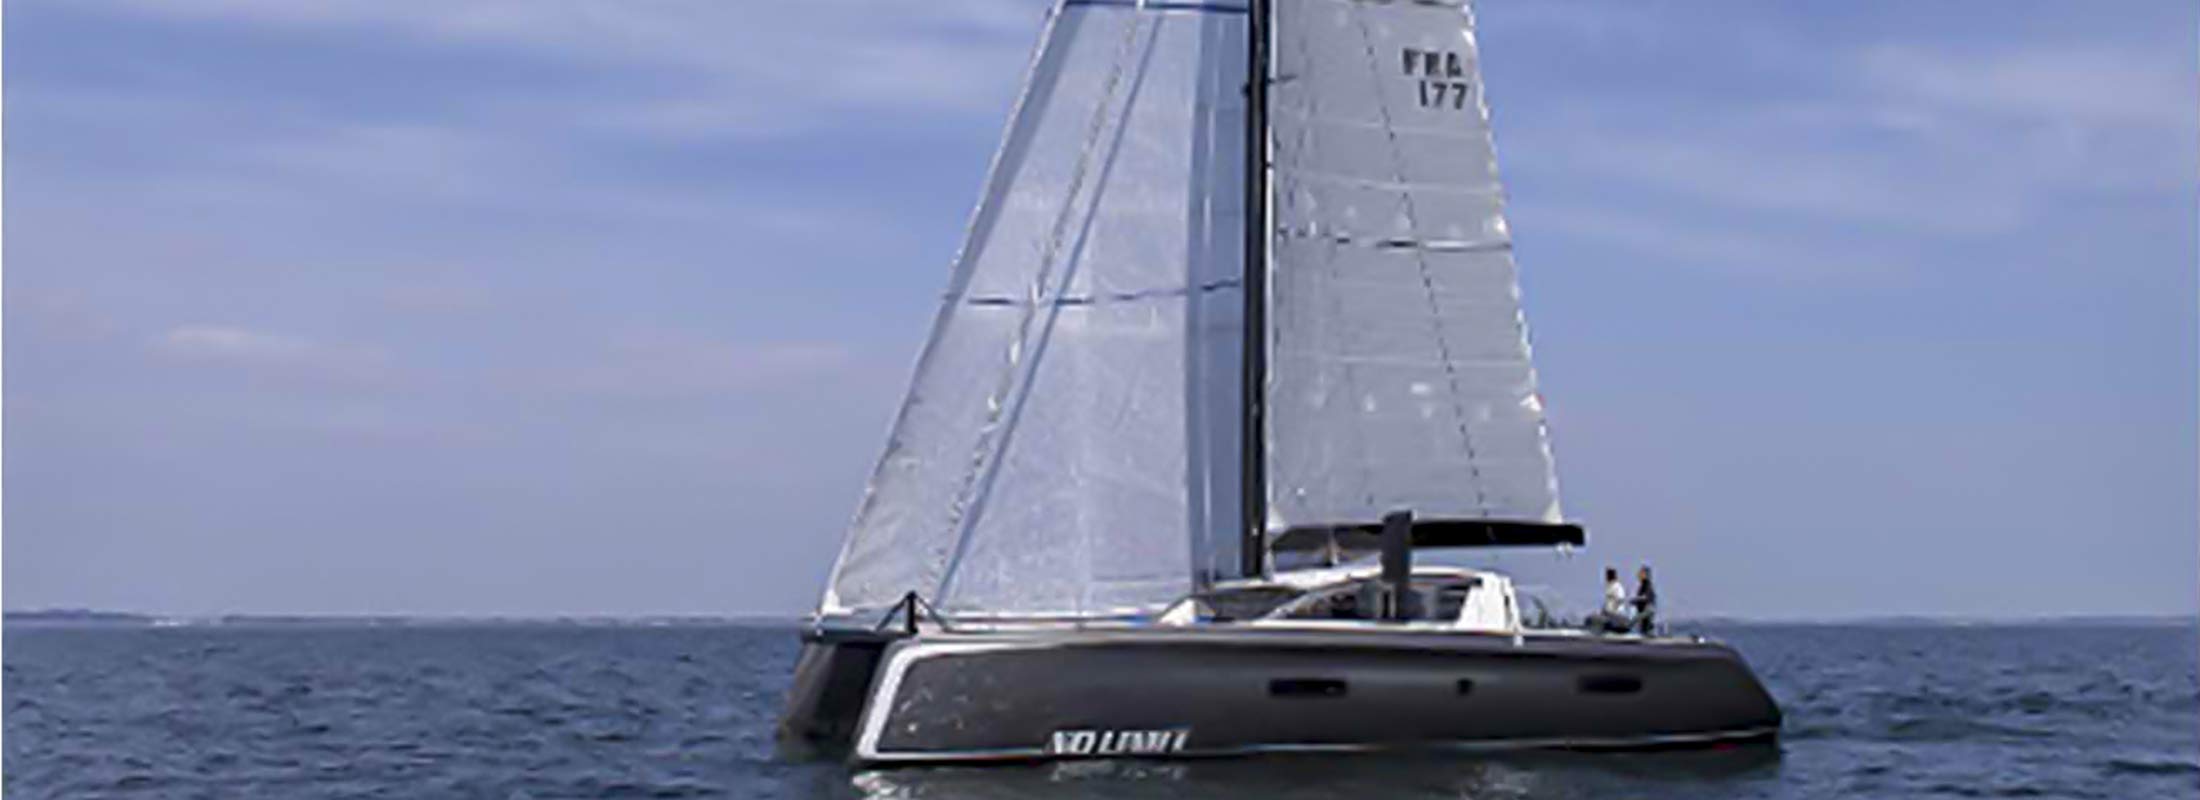 No Limit Sailing Yacht for Charter Mediterranean slider 2